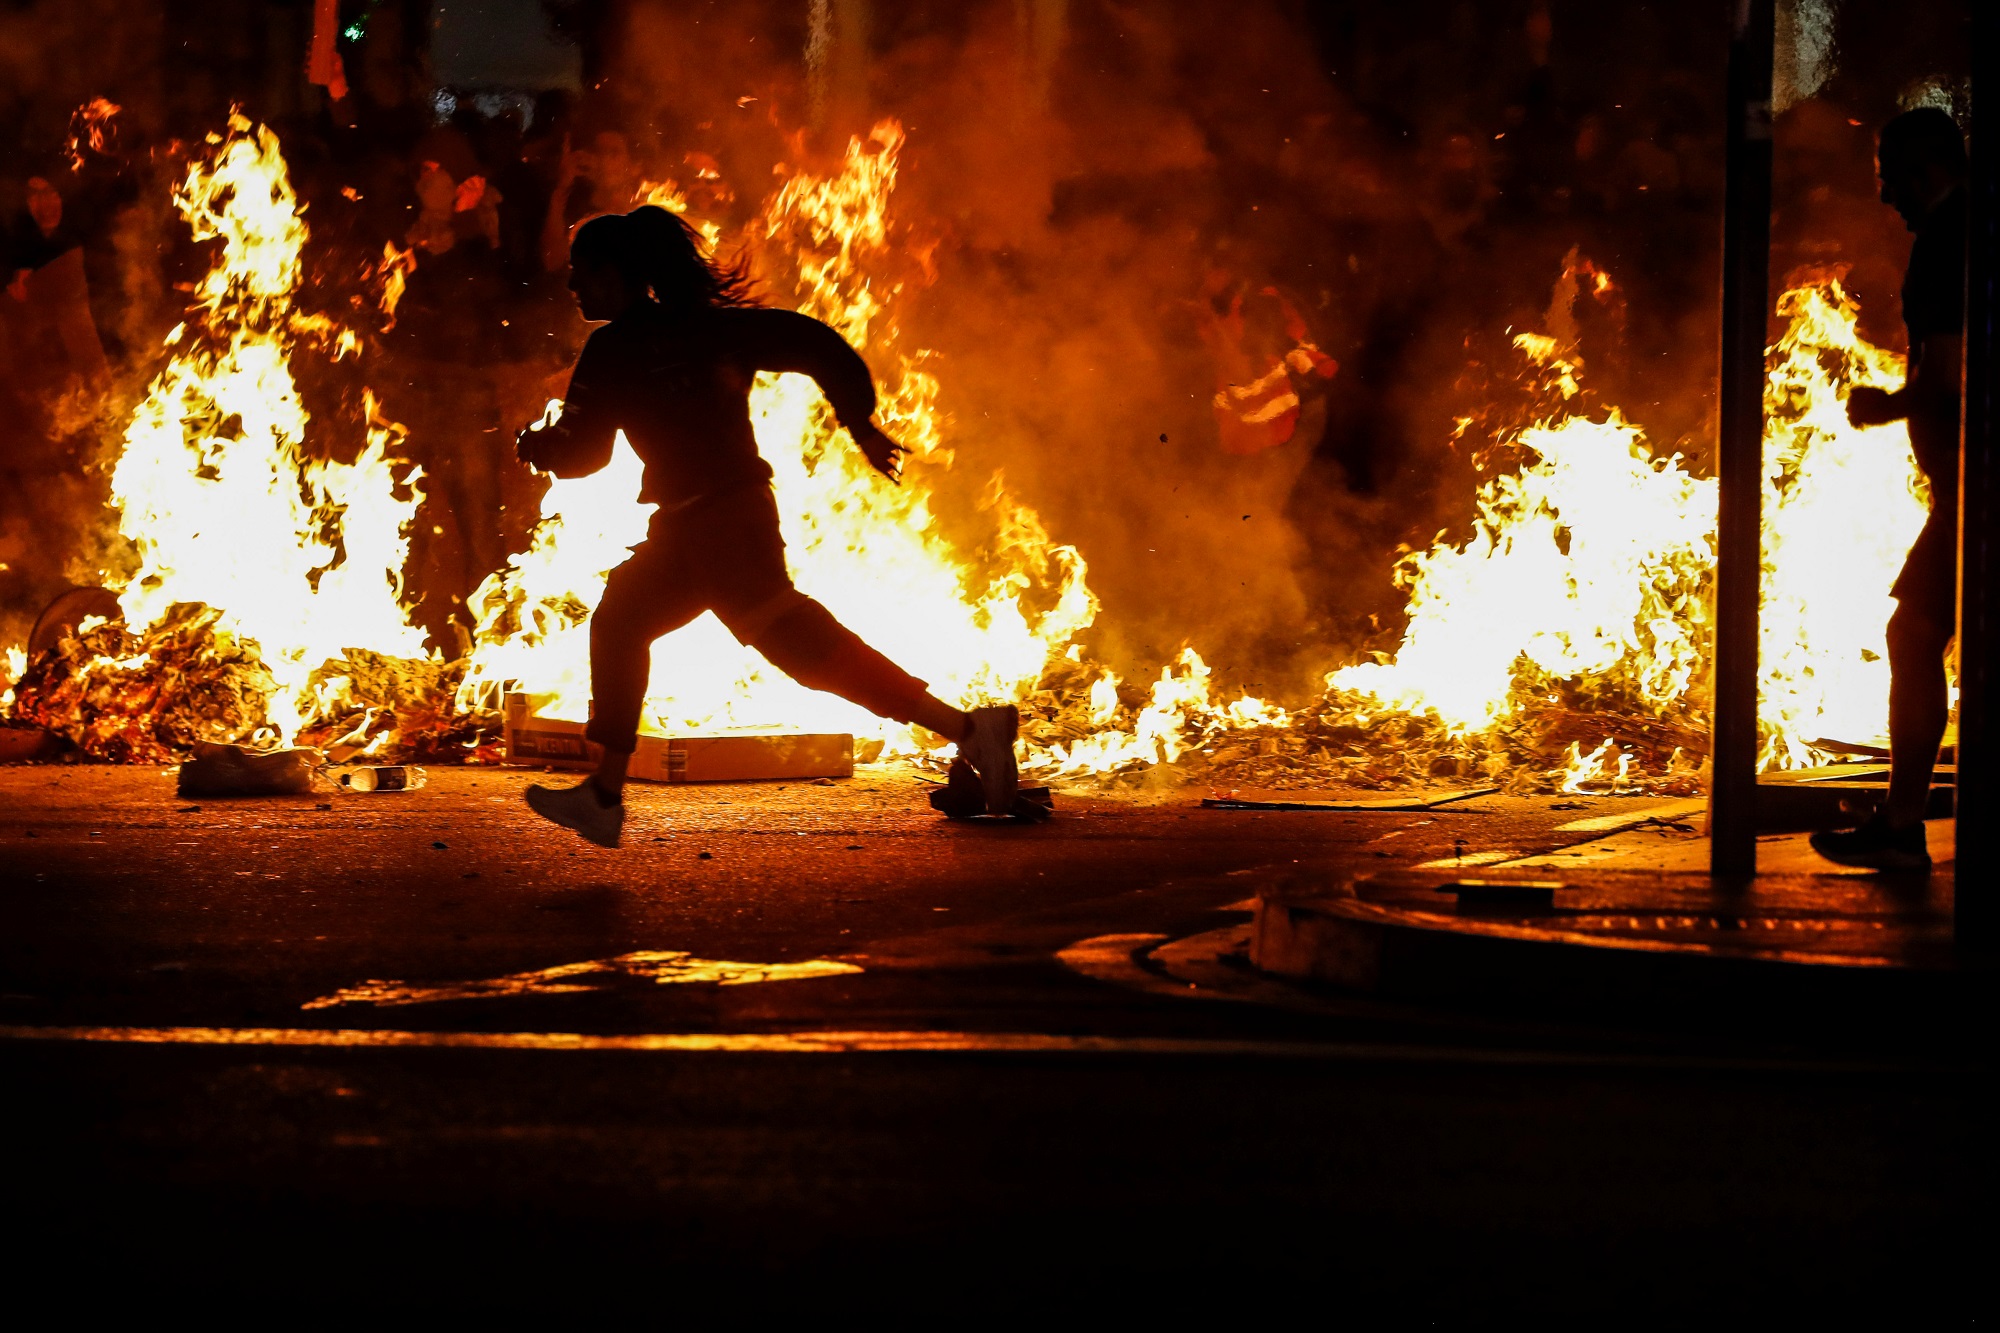 متظاهر يركض أثناء احتجاج بعد صدور حكم بشأن استفتاء على الاستقلال في برشلونة الإسبانية. 17 أكتوبر 2019. جون نازكا/ رويترز